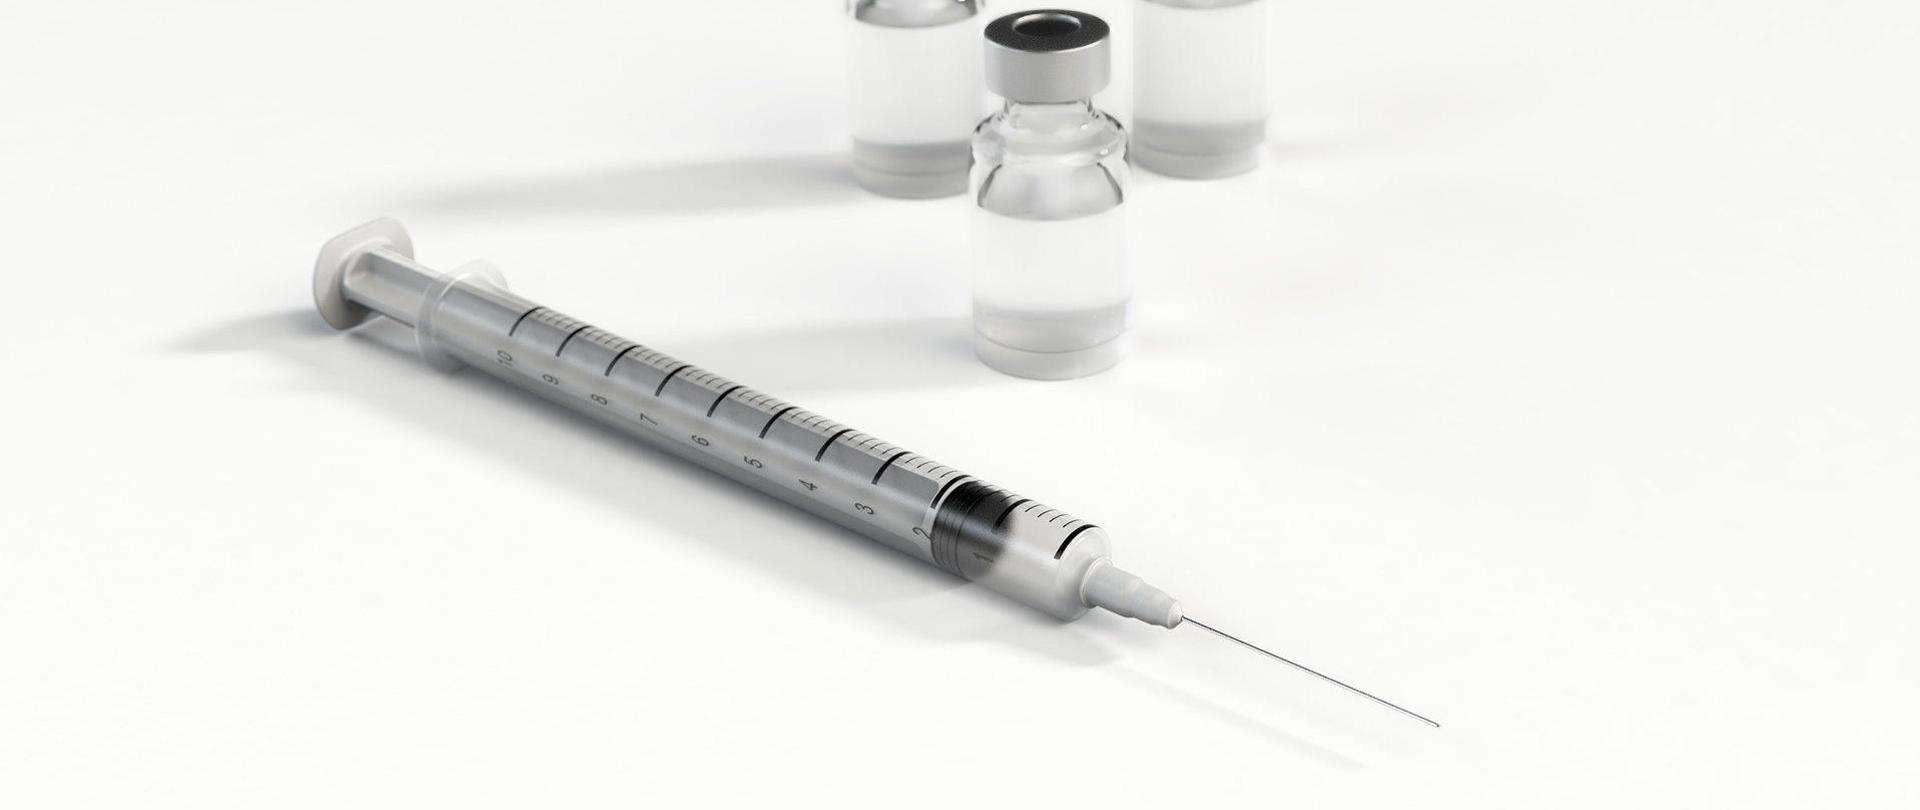 Zdjęcie, na którym znajduje się strzykawka. W tle widoczne są fiolki ze szczepionką.